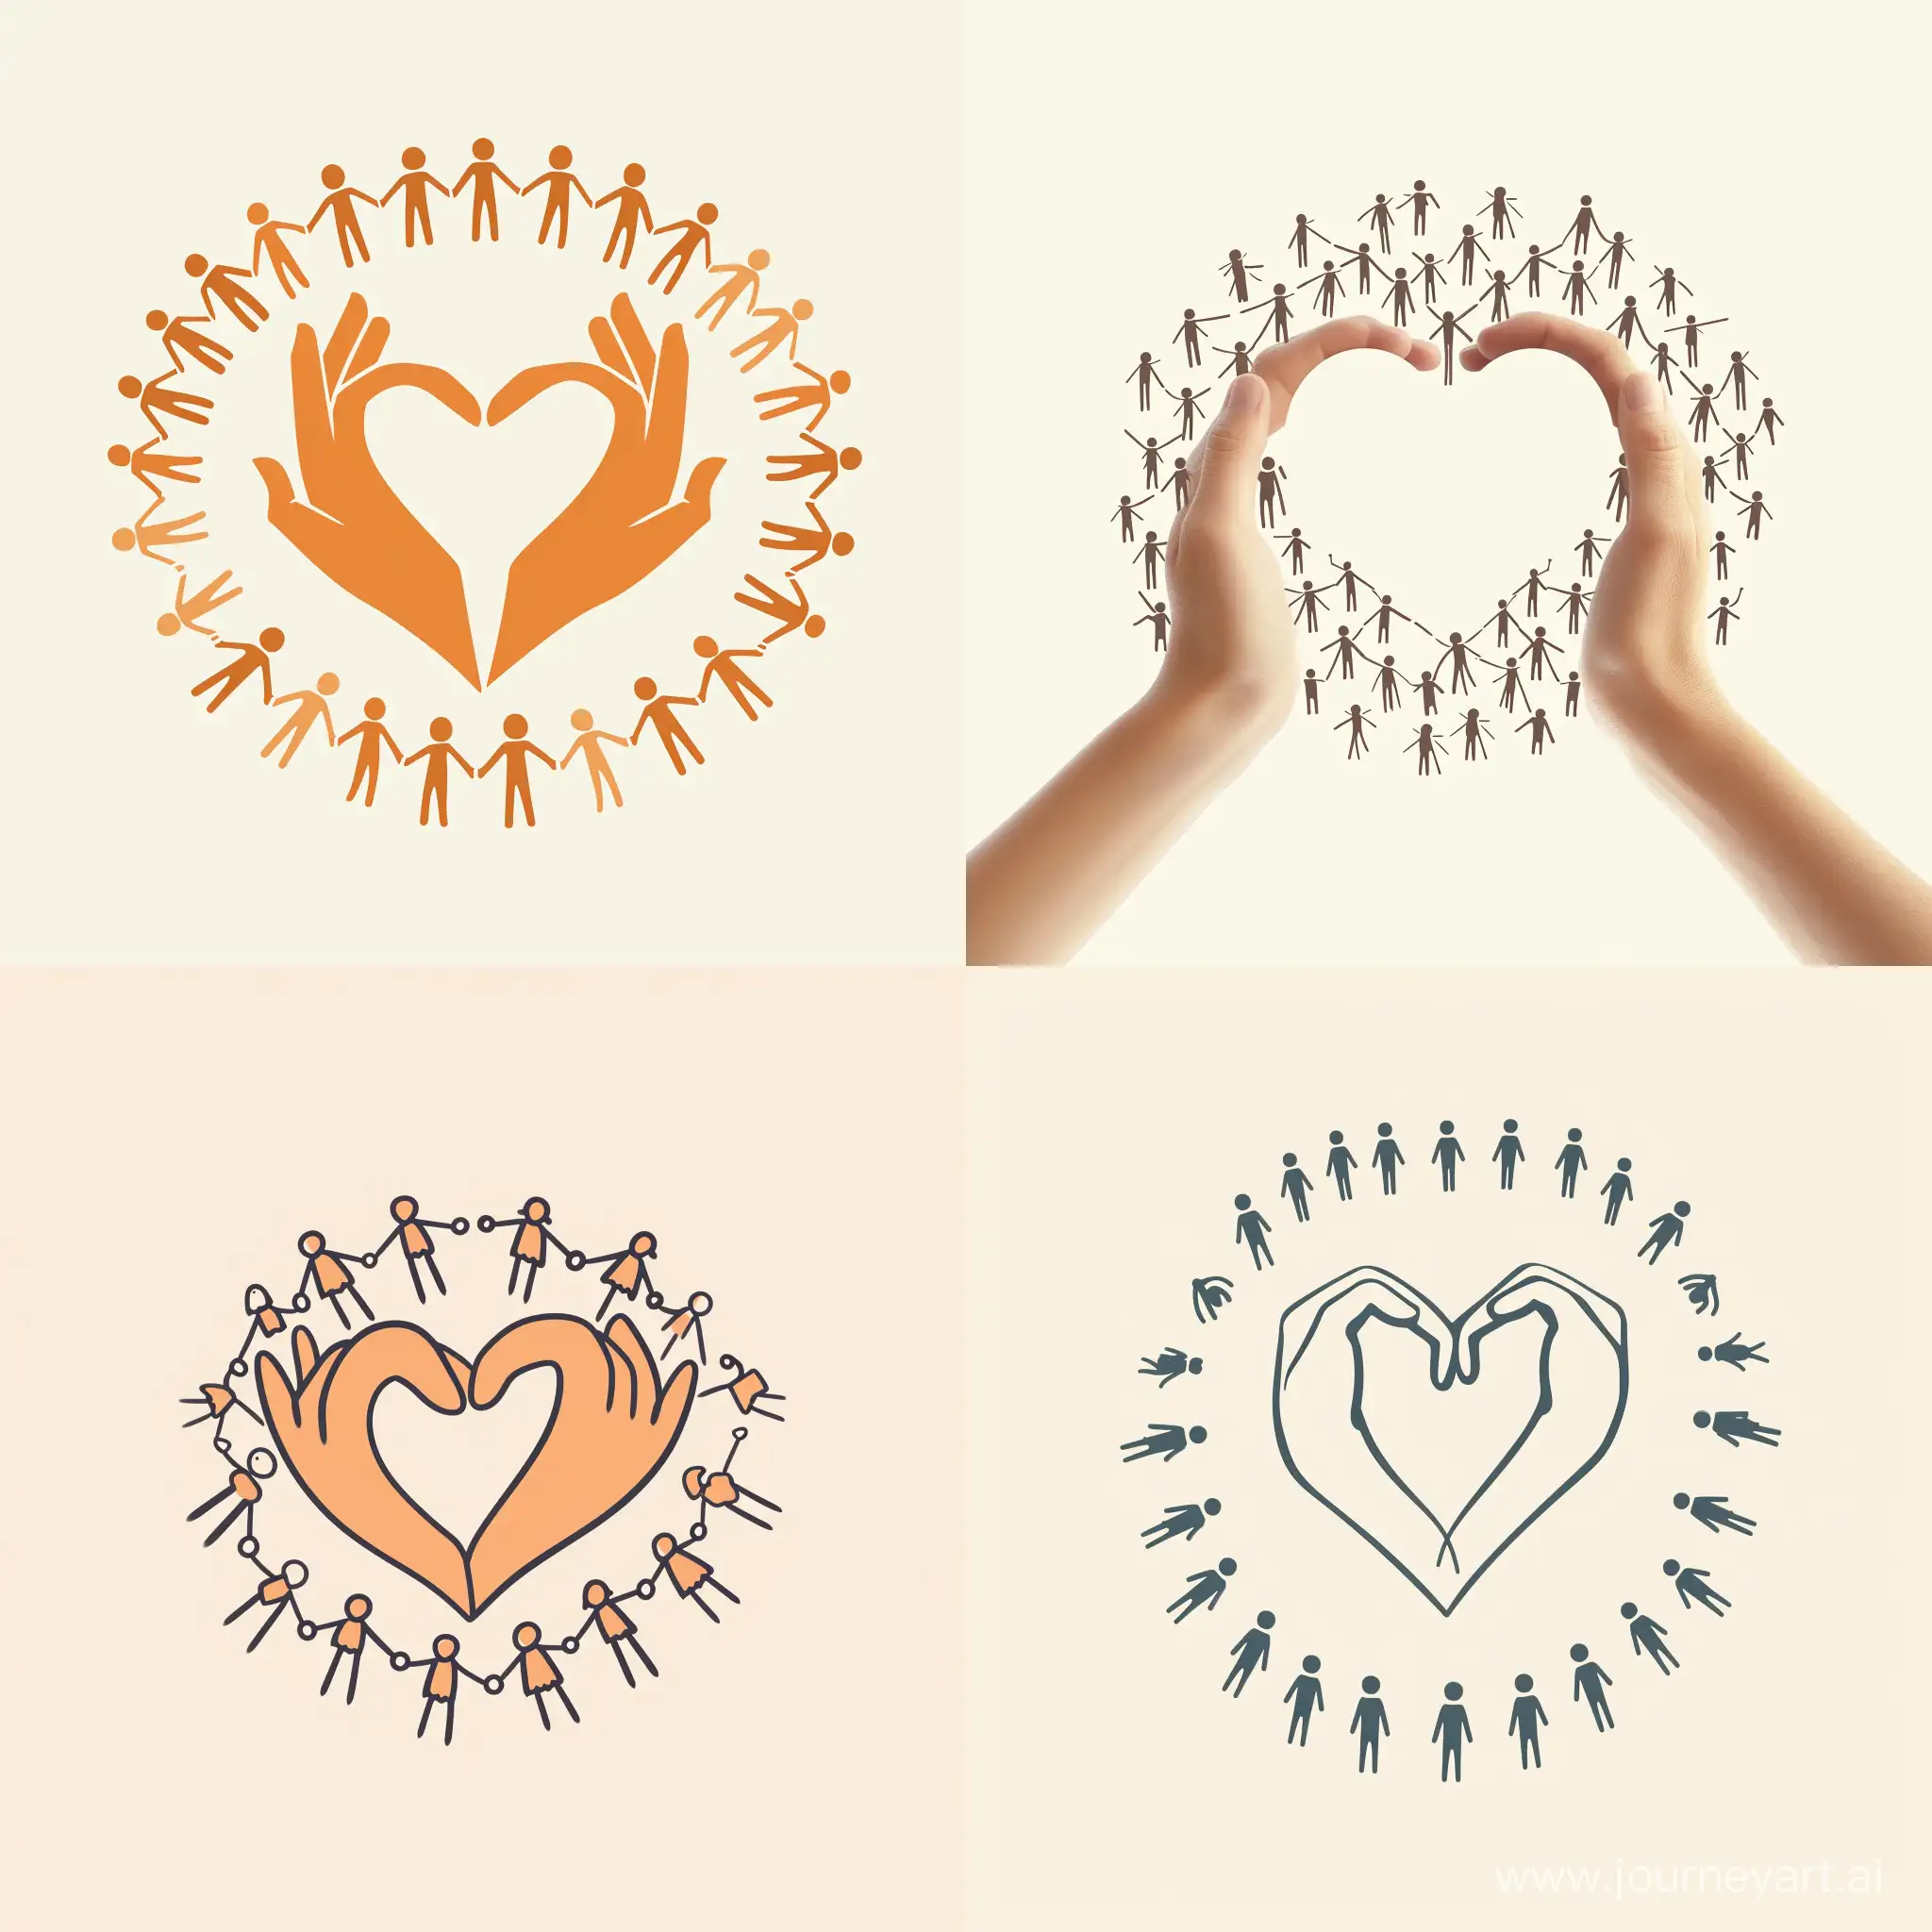 Сделай логотип, где посередине две руки формируют фигуру сердца. (Я приложил картинку с примером рук). А по кругу держатся за руки фигурки человечков. При этом лого должен быть лаконичным, элегантным, светлым и воздушным.